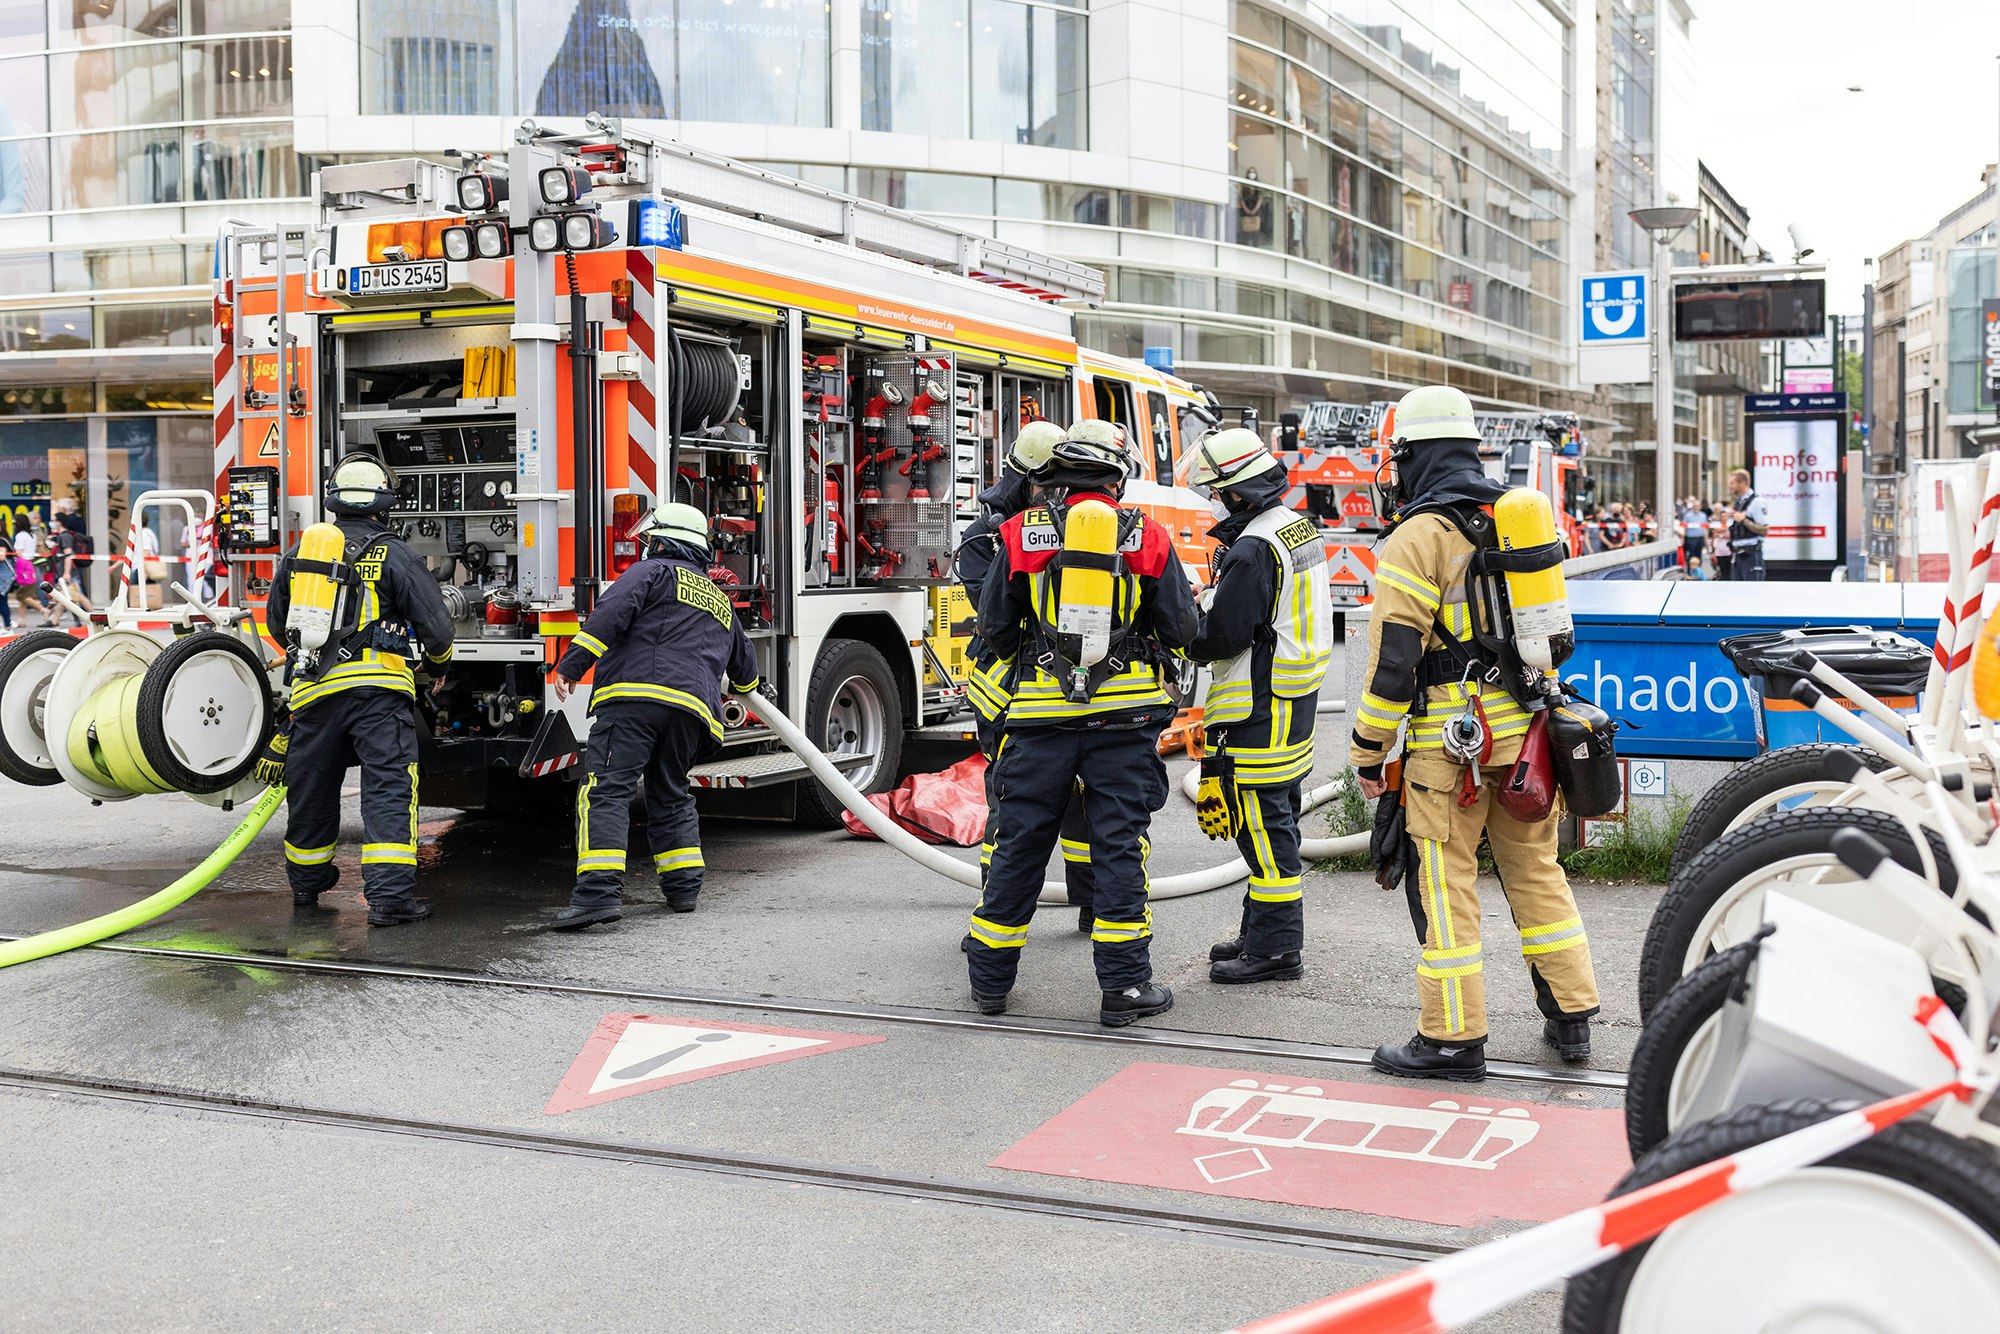 Einsatzkräfte der Feuerwehr stehen vor dem U-Bahnhof Schadowstraße.